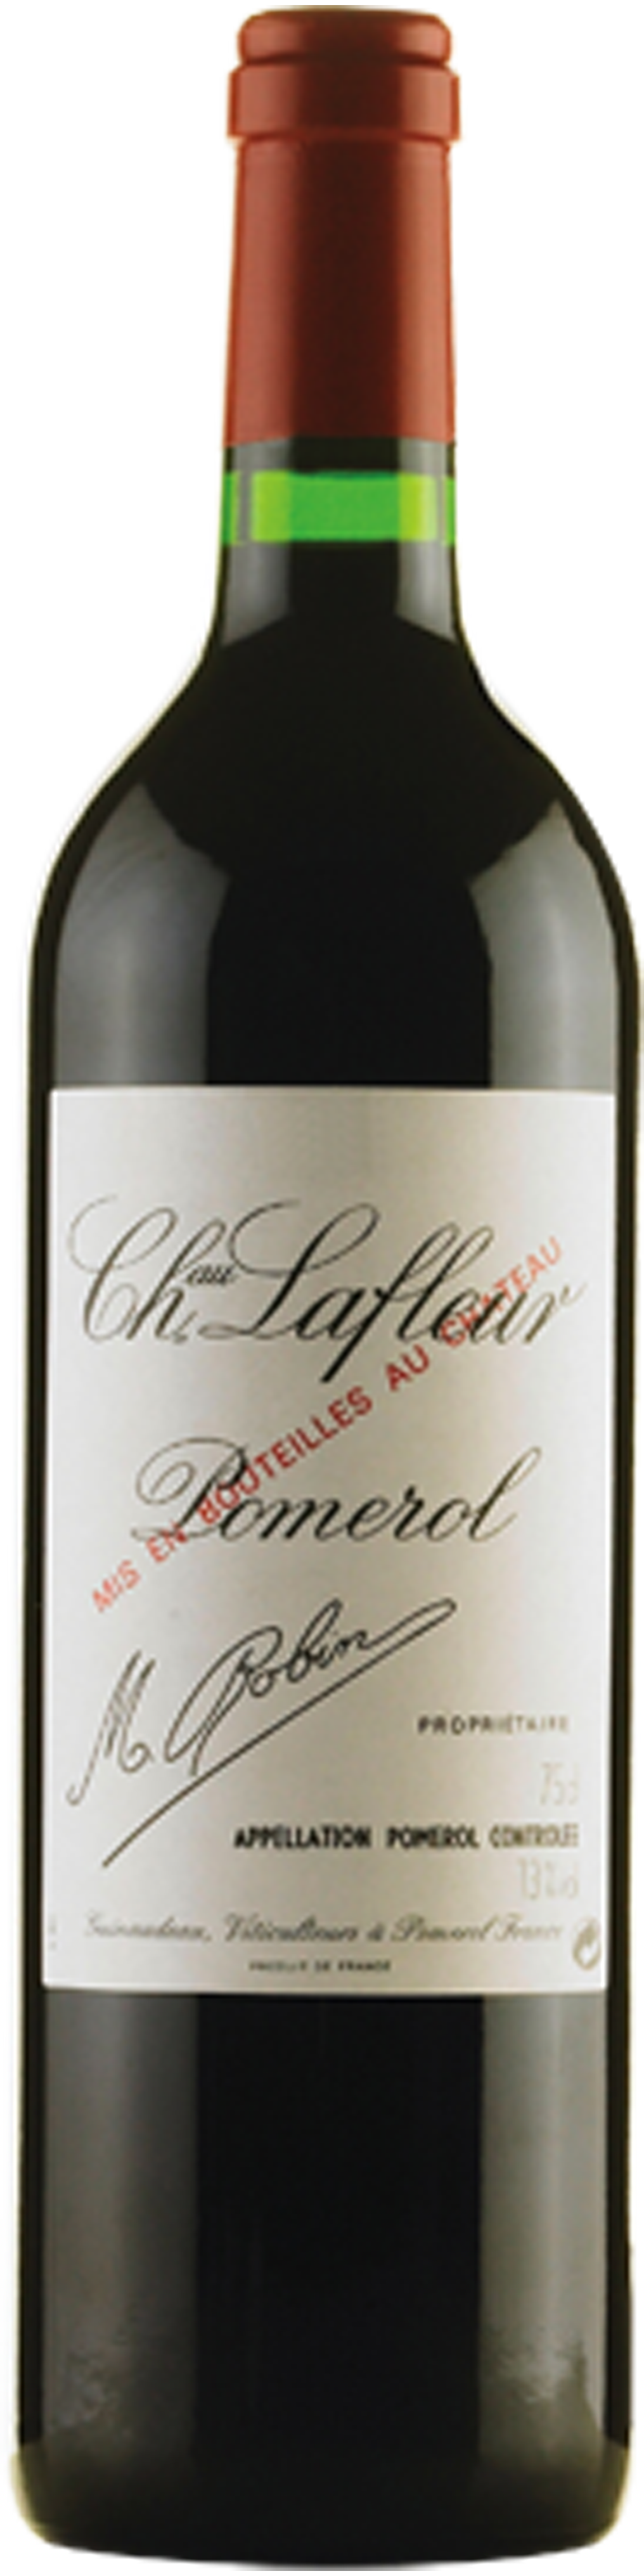 Bottle shot of 1983 Château Lafleur, Pomerol